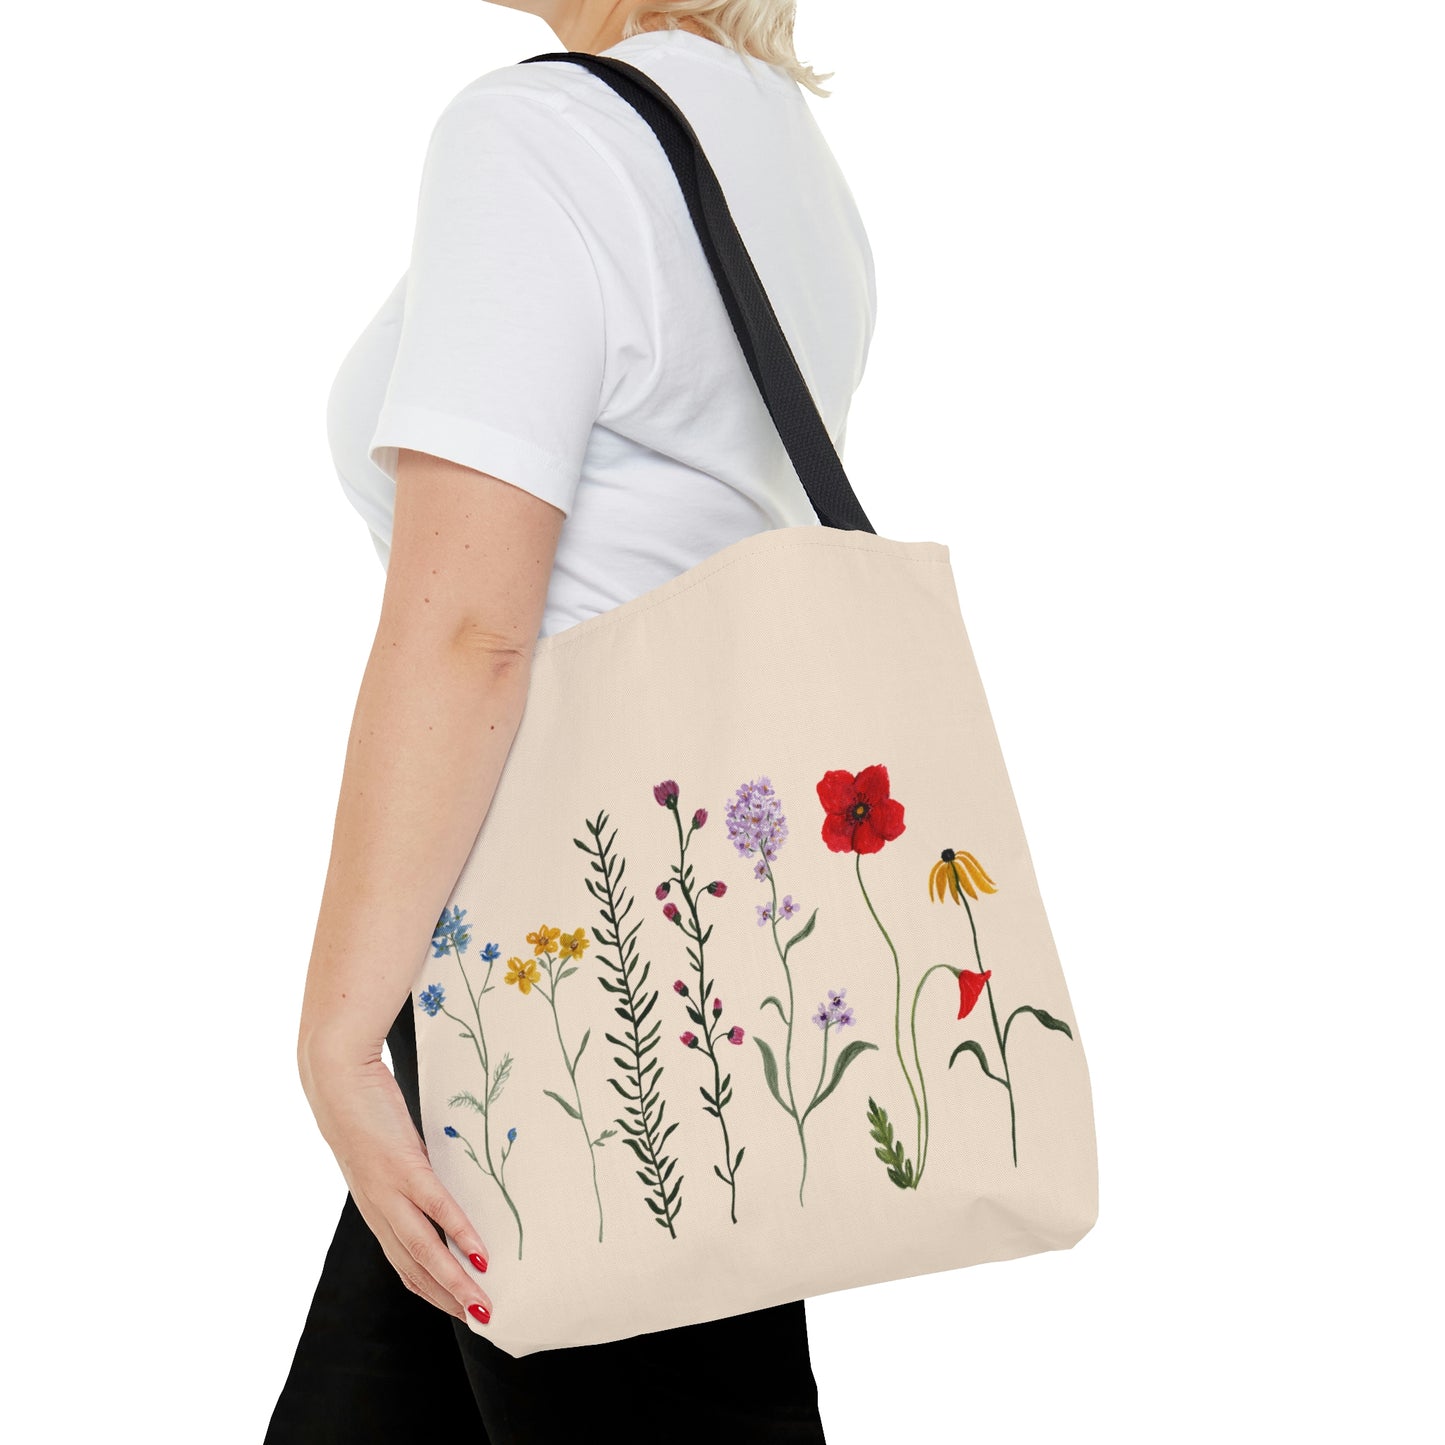 Wildflowers - Tote Bag